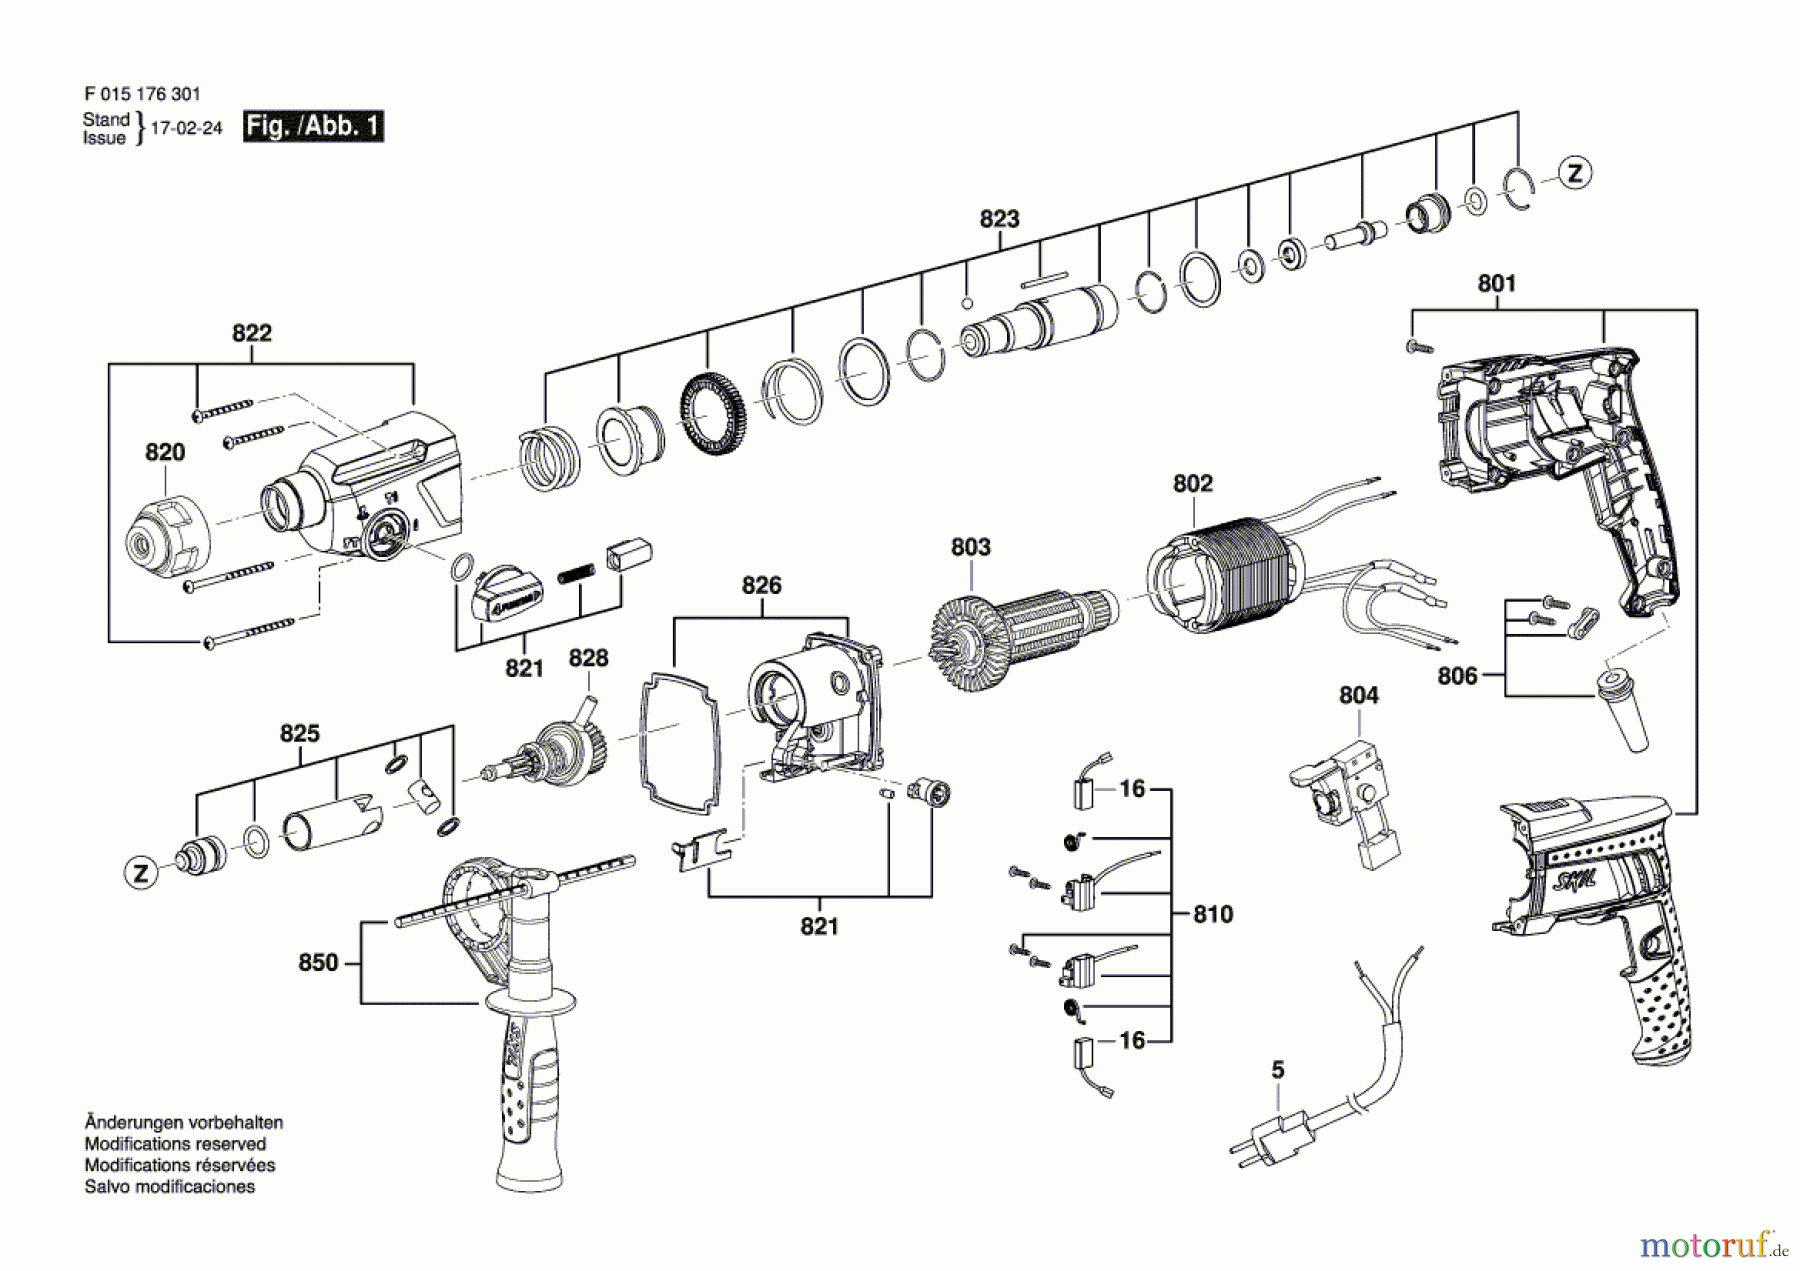  Bosch Werkzeug Bohrhammer 1763 Seite 1